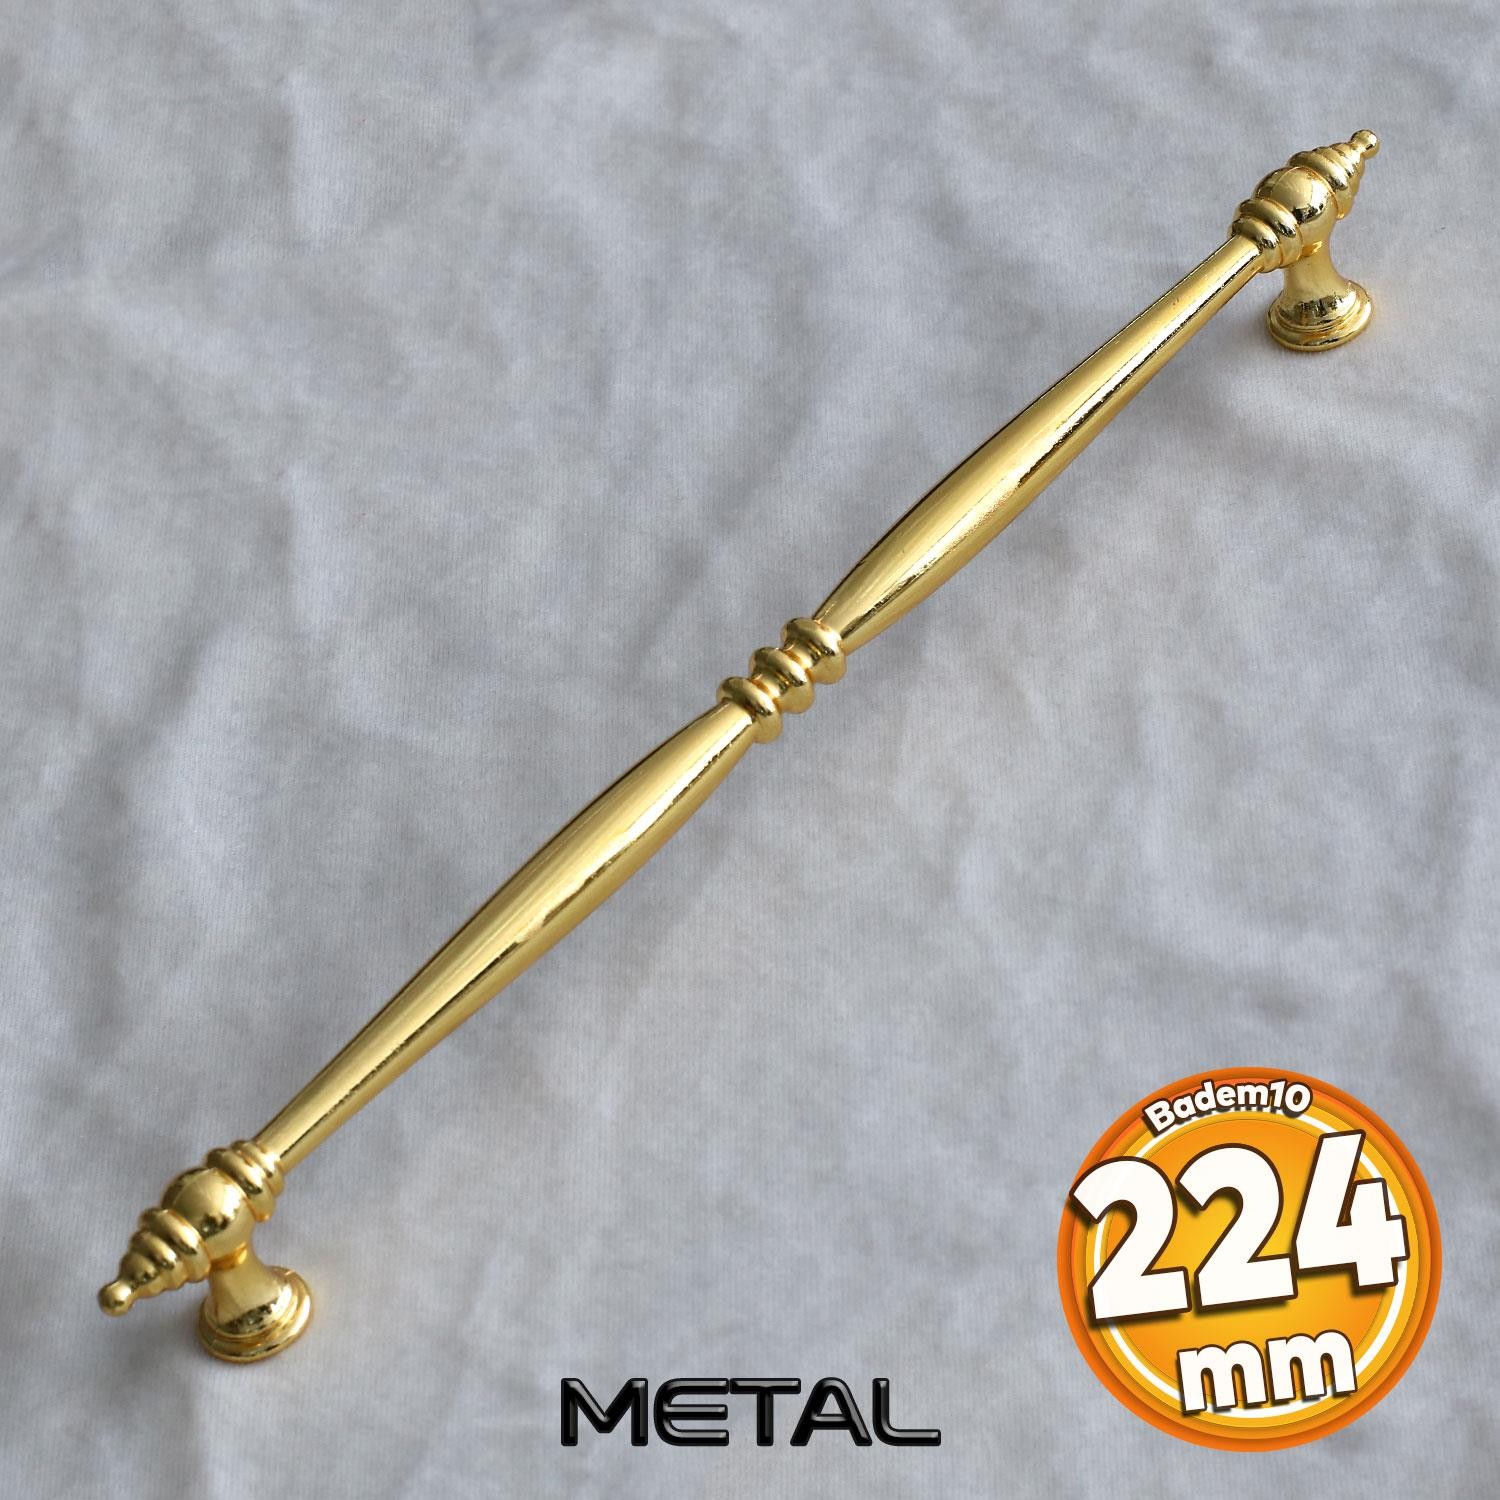 Petek Lüx 224 mm Gold Altın Mobilya Mutfak Dolabı Çekmece Dolap Kapak Kulpu Kulp Kulbu Metal